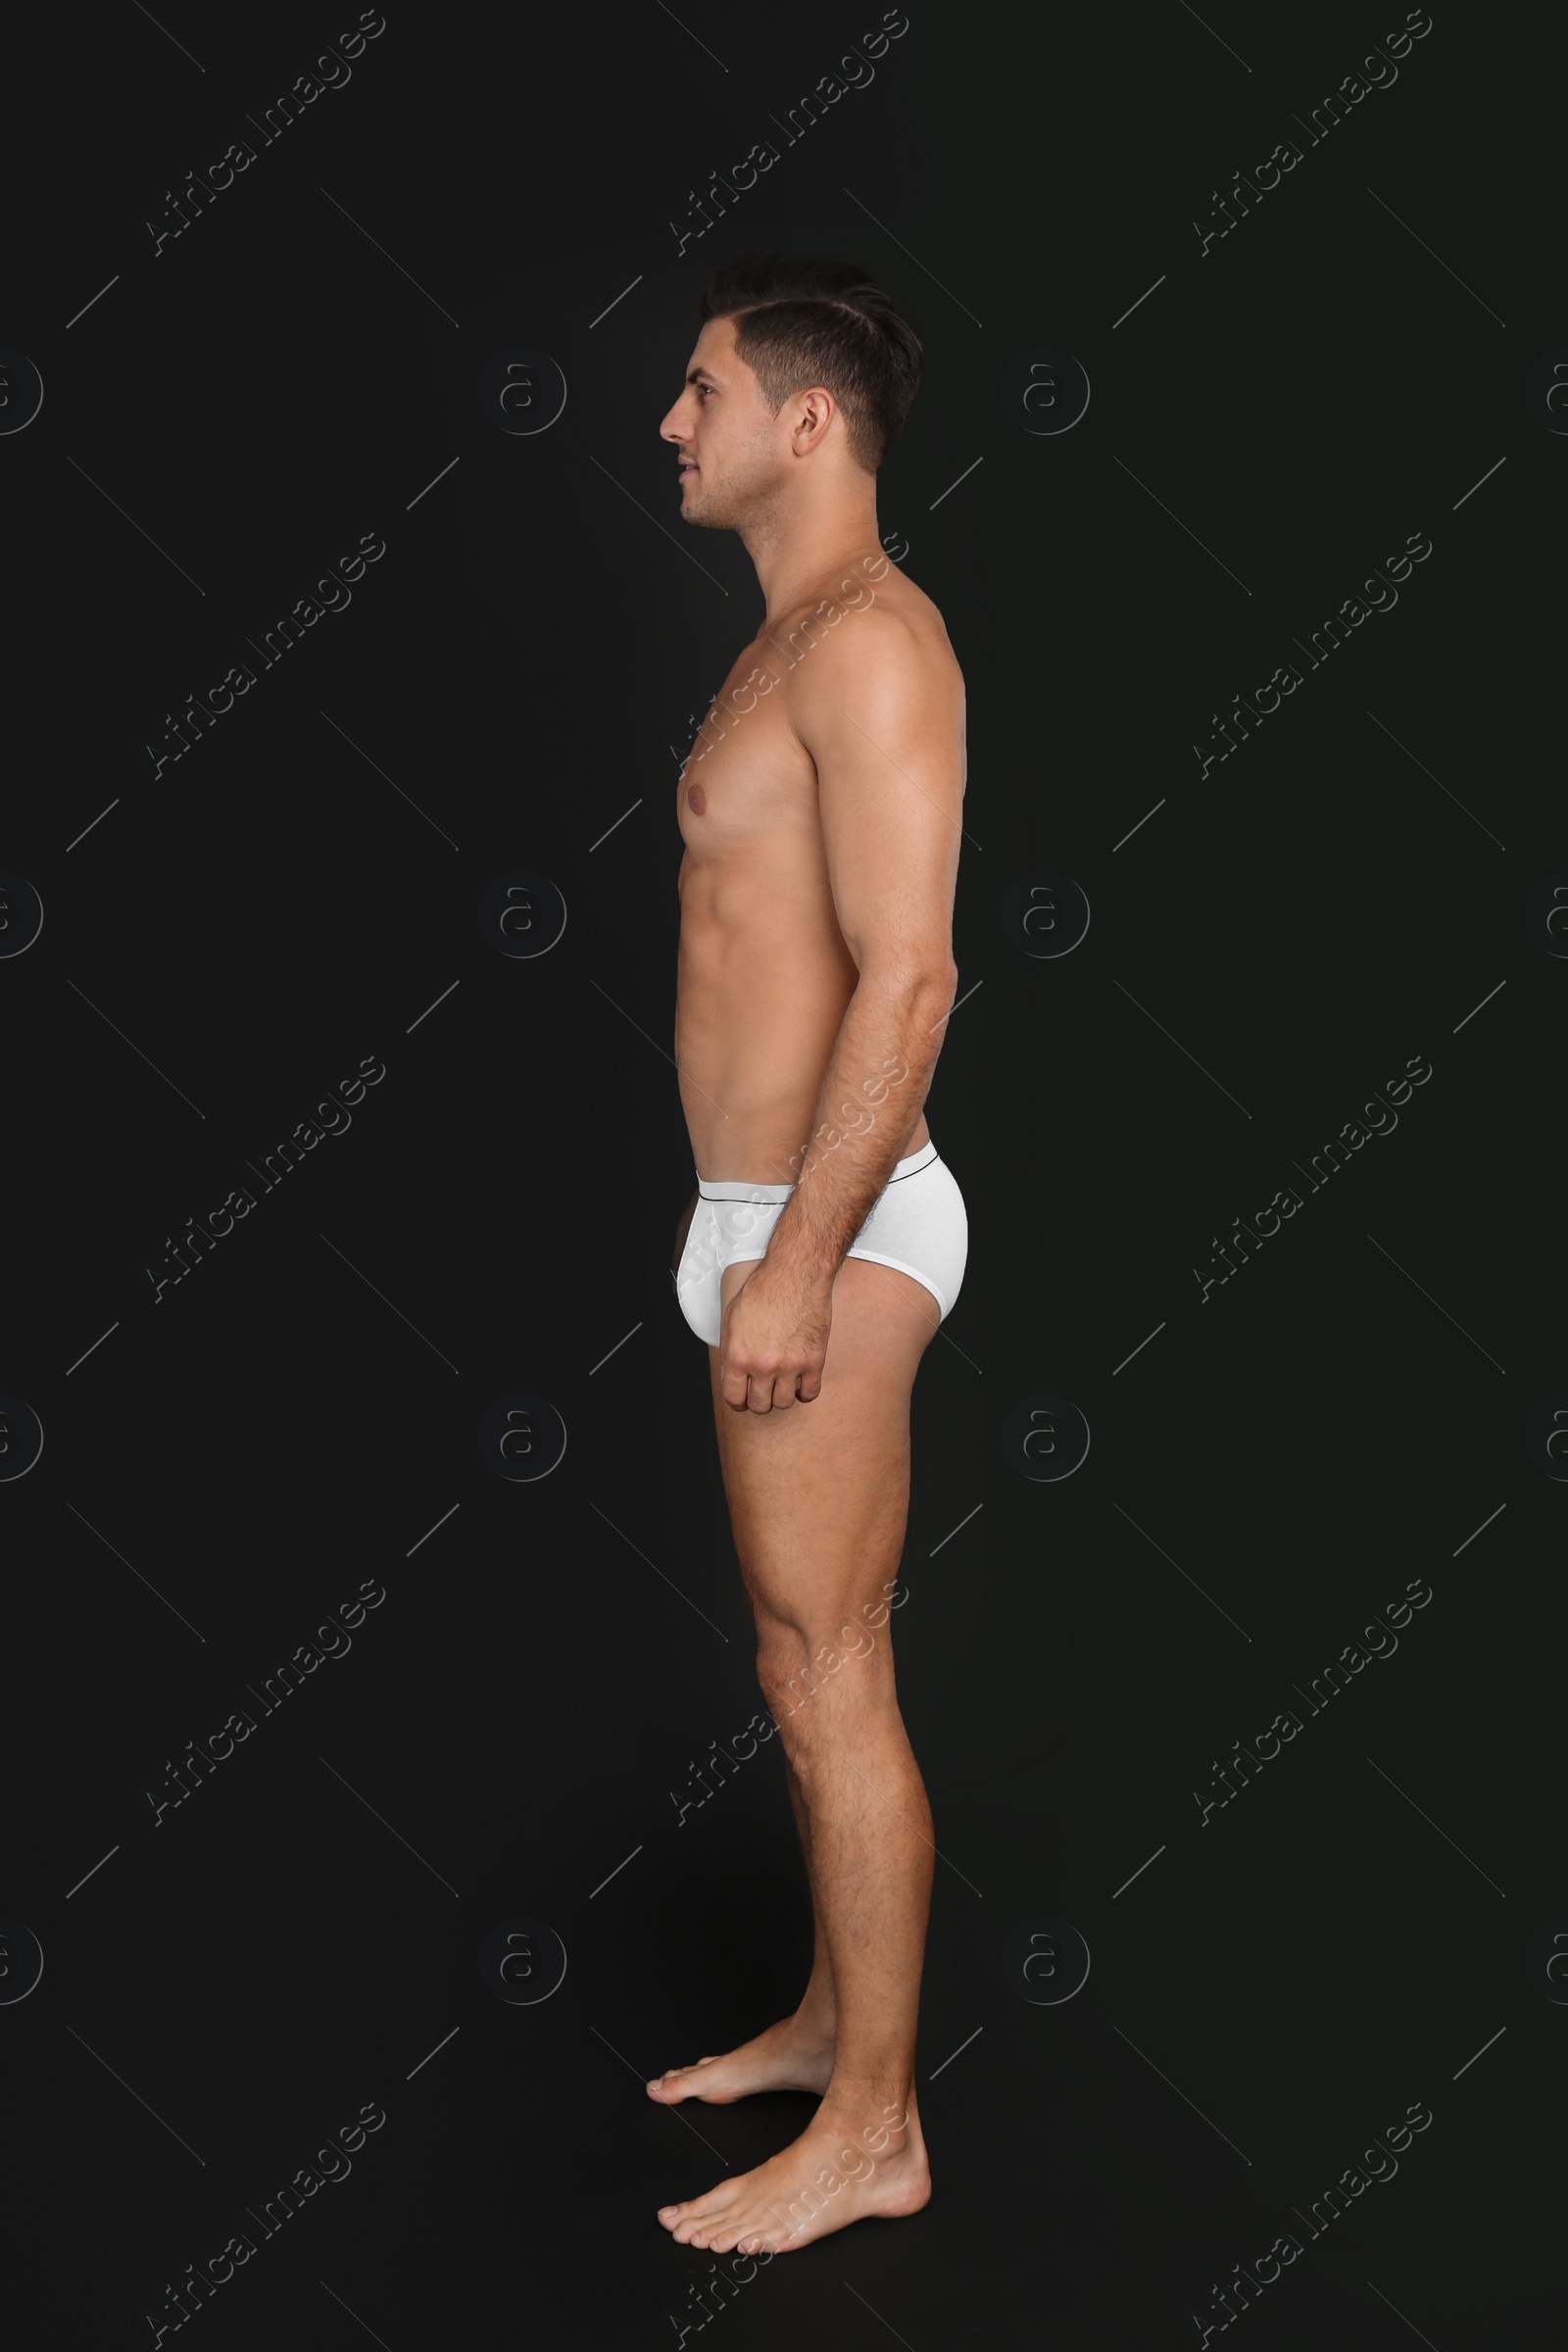 Photo of Handsome man in underwear on black background